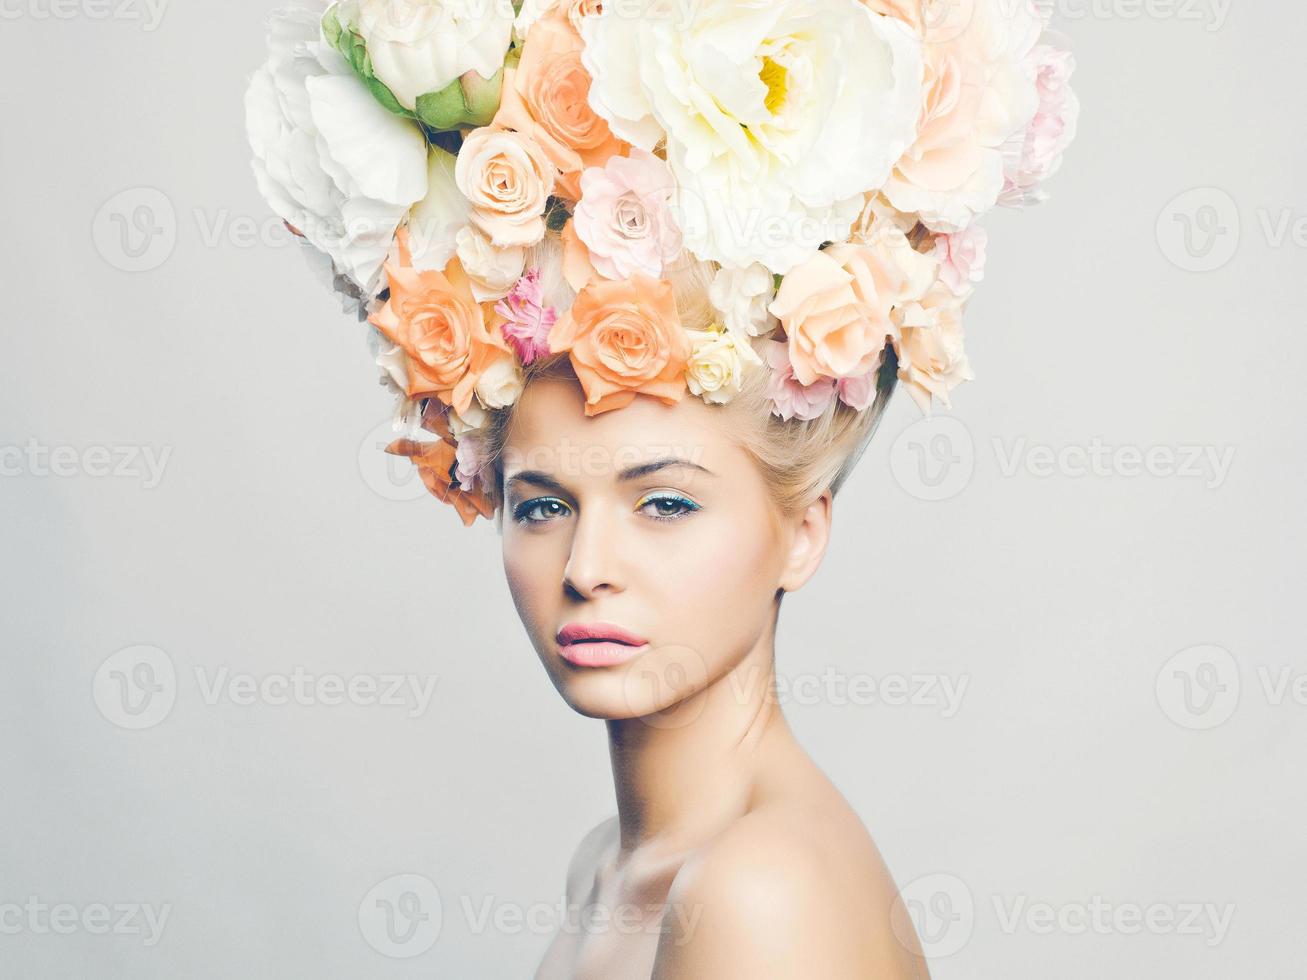 belle femme avec une coiffure de fleurs photo